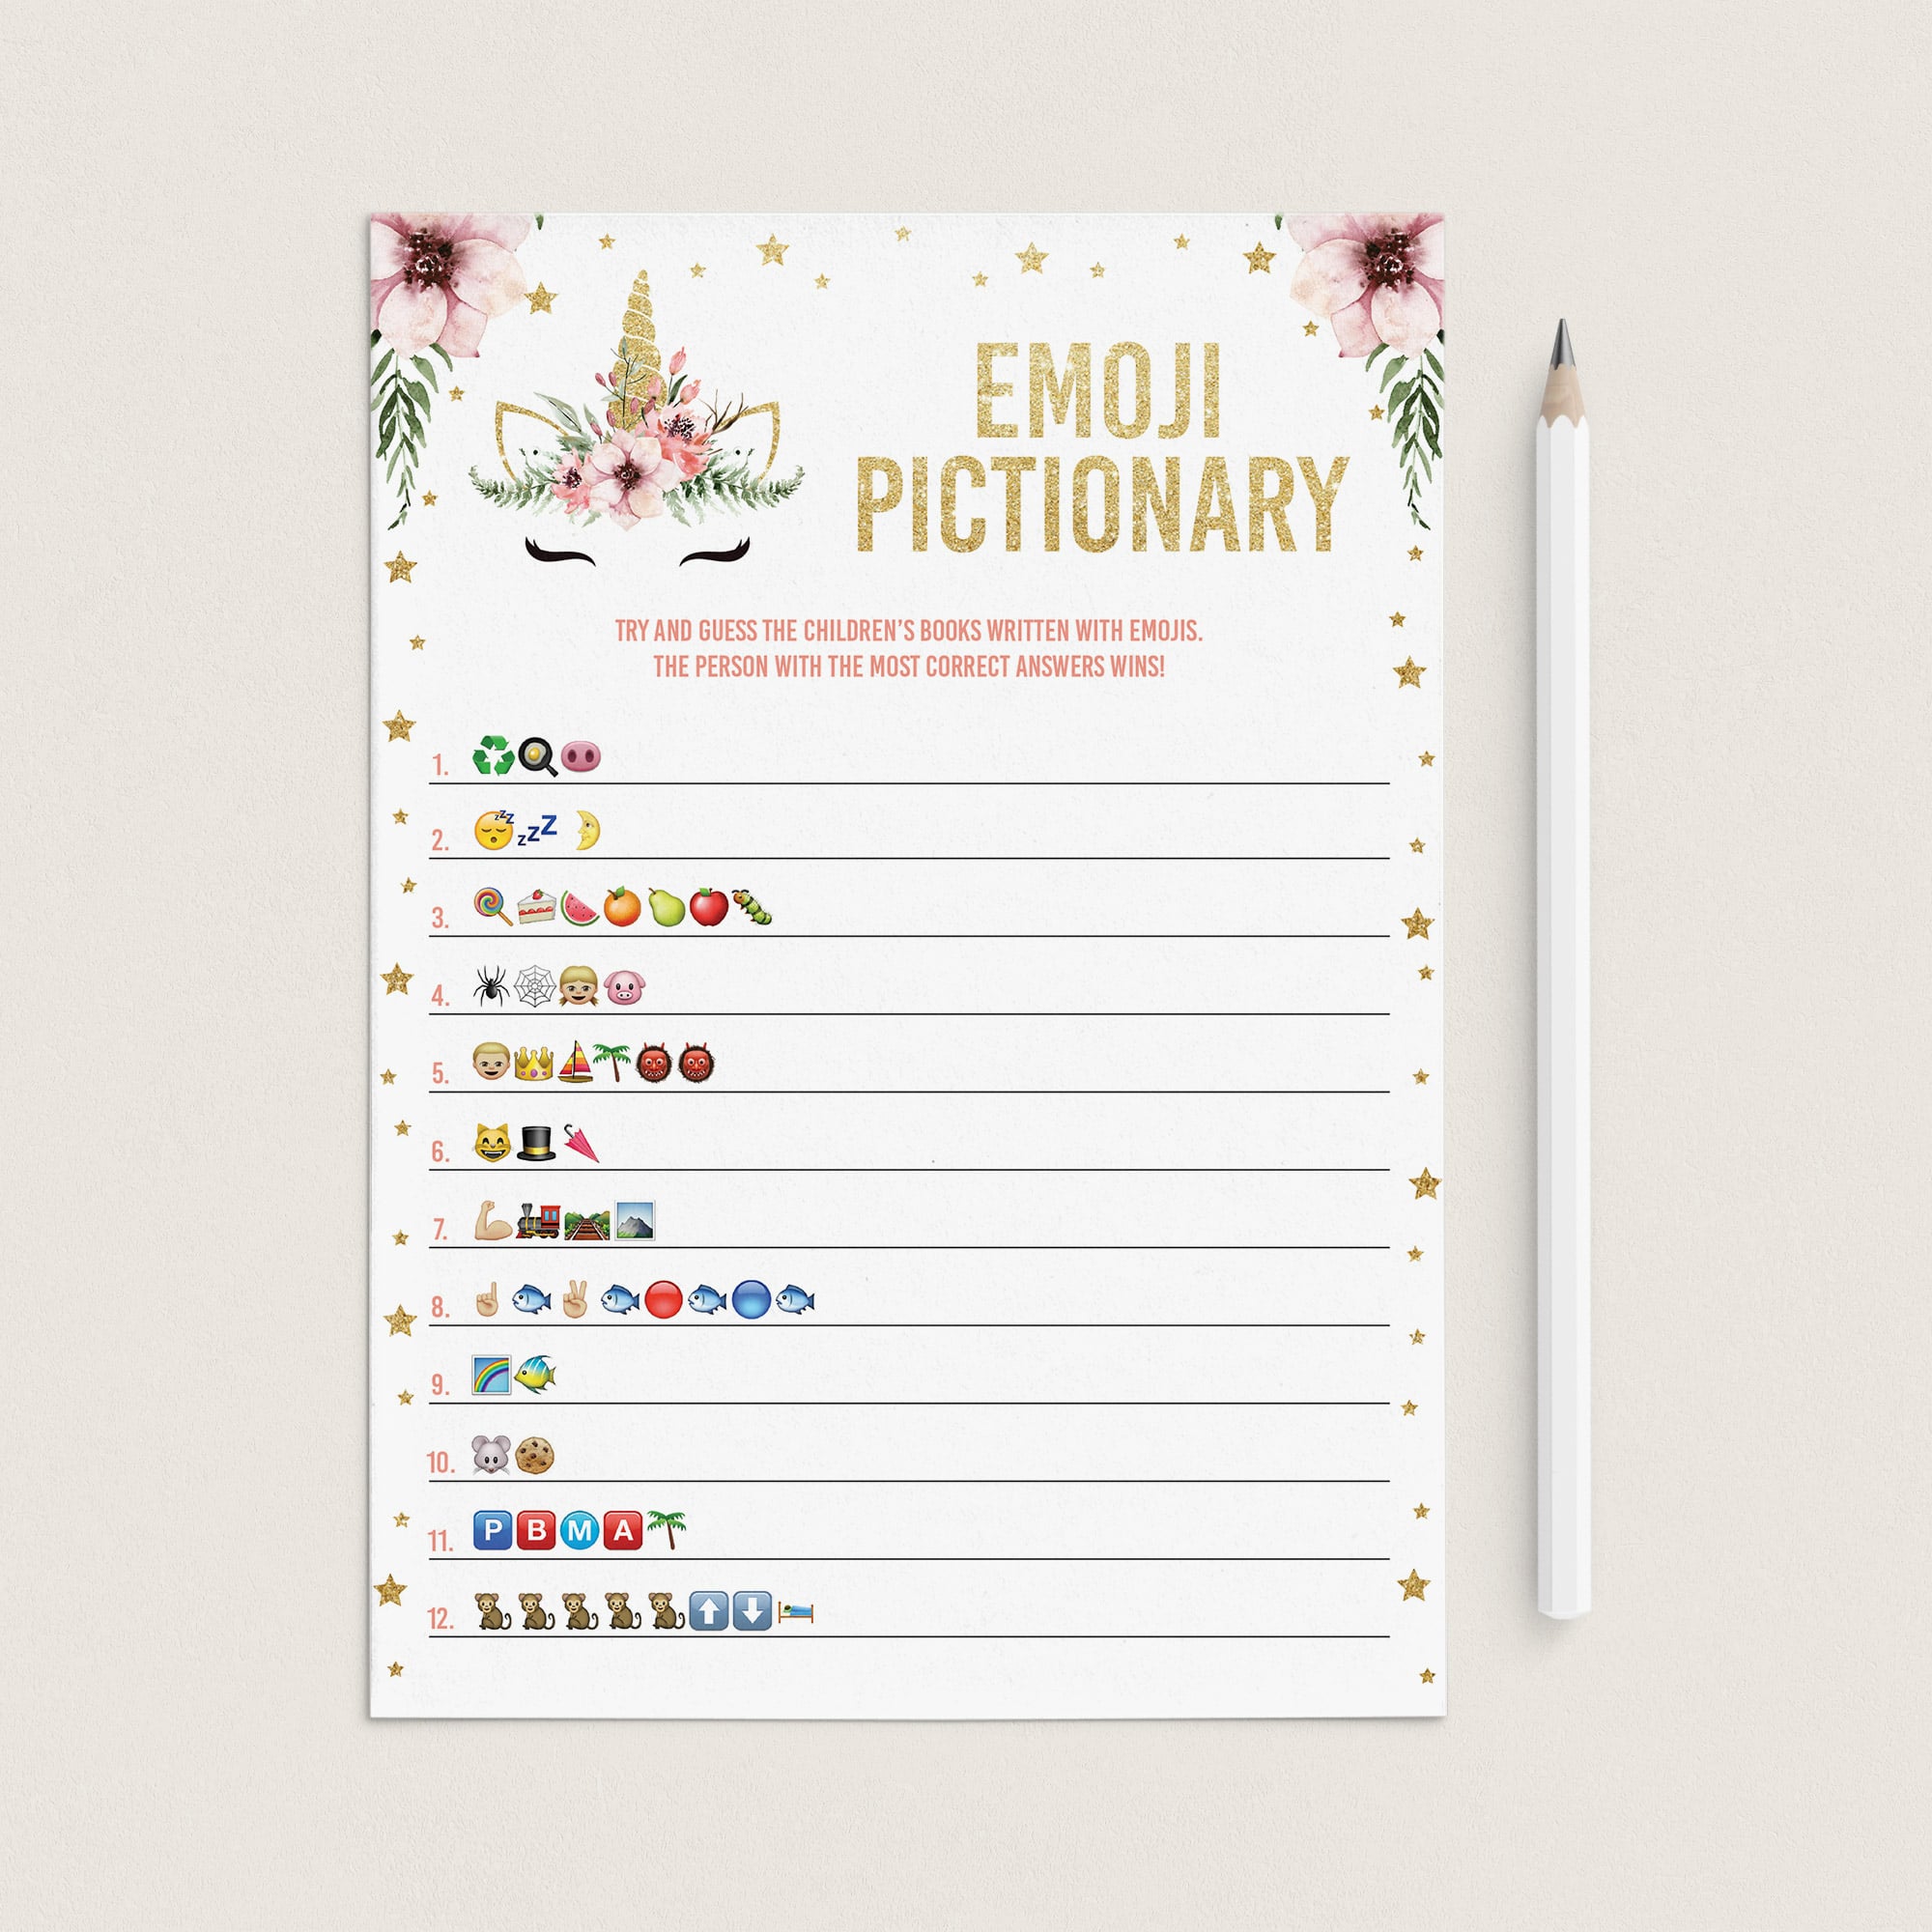 Unicorn emoji pictionary game printable by LittleSizzle